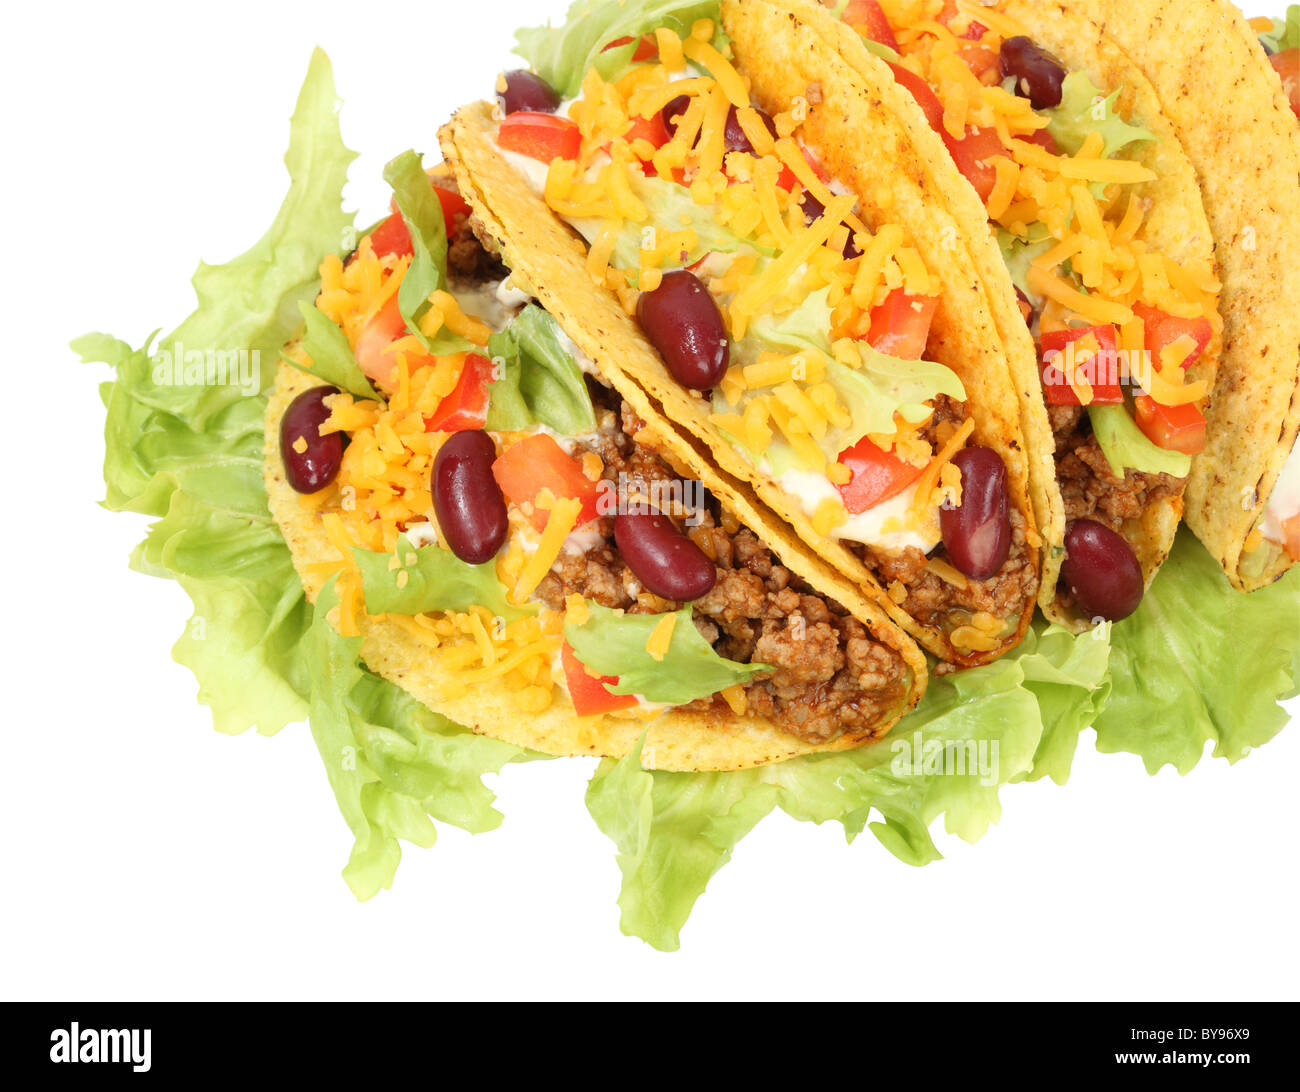 Delicious Mexican tacos Stock Photo